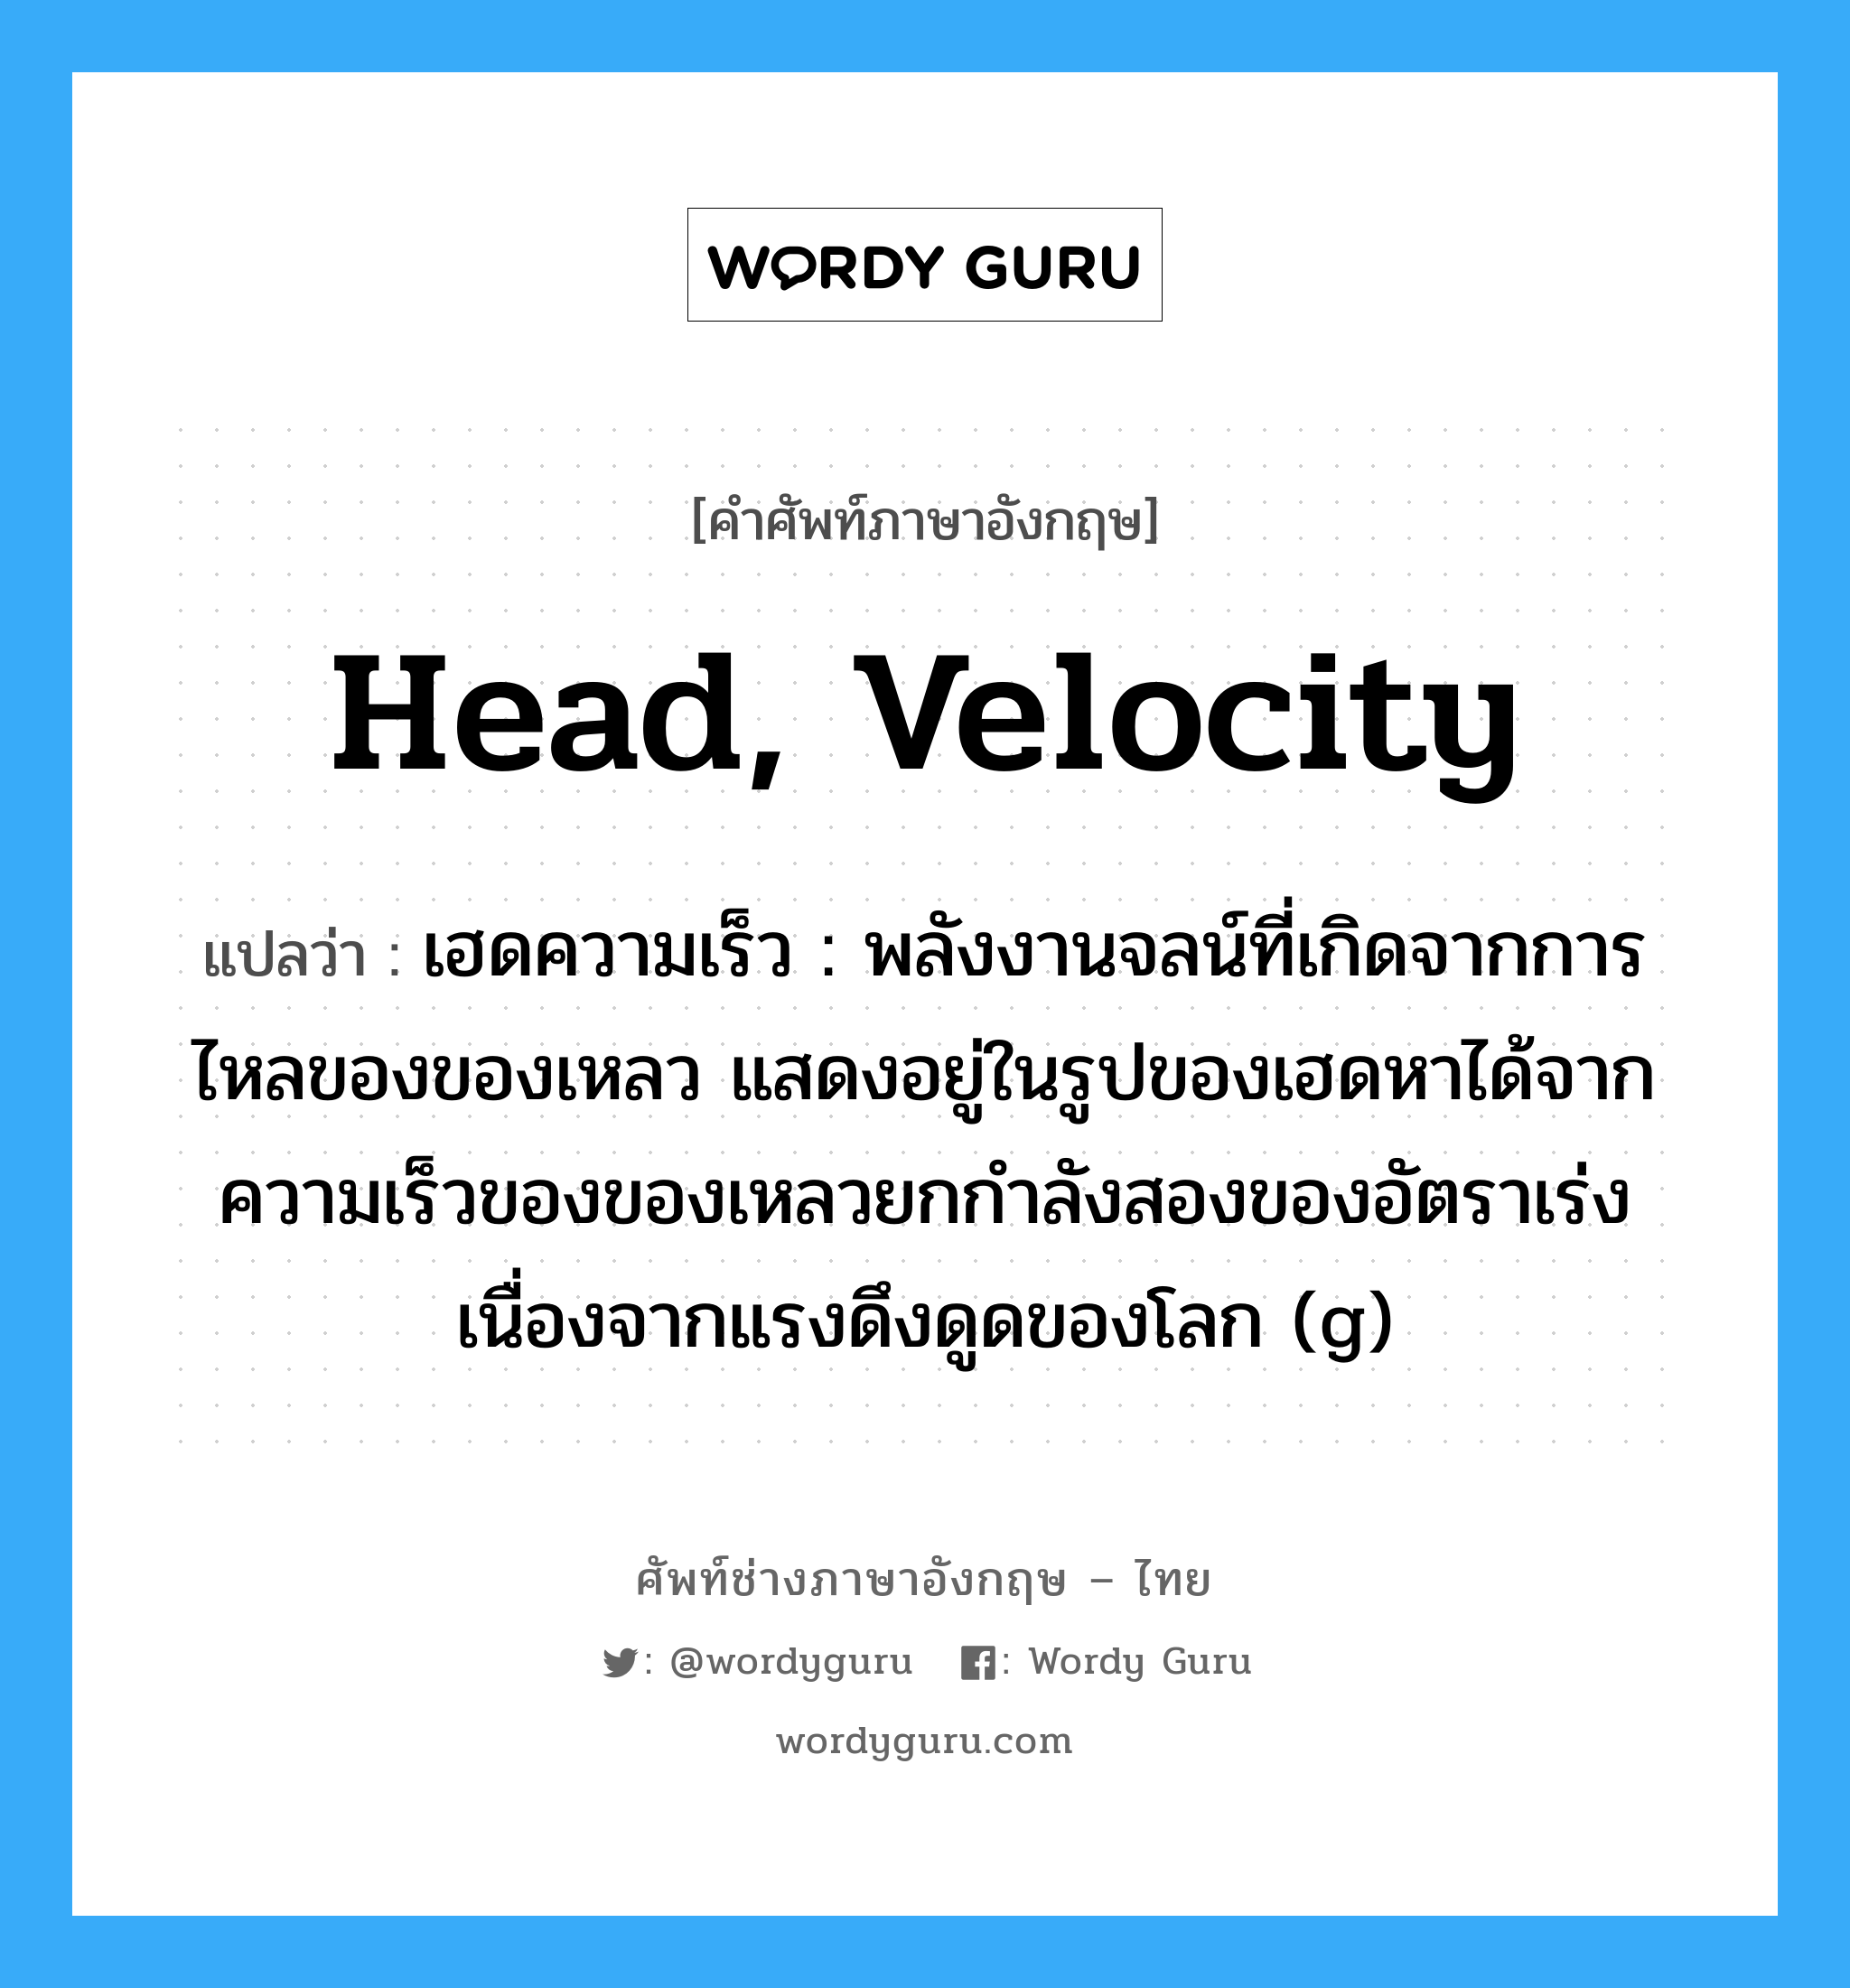 head, velocity แปลว่า?, คำศัพท์ช่างภาษาอังกฤษ - ไทย head, velocity คำศัพท์ภาษาอังกฤษ head, velocity แปลว่า เฮดความเร็ว : พลังงานจลน์ที่เกิดจากการไหลของของเหลว แสดงอยู่ในรูปของเฮดหาได้จาก ความเร็วของของเหลวยกกำลังสองของอัตราเร่งเนื่องจากแรงดึงดูดของโลก (g)